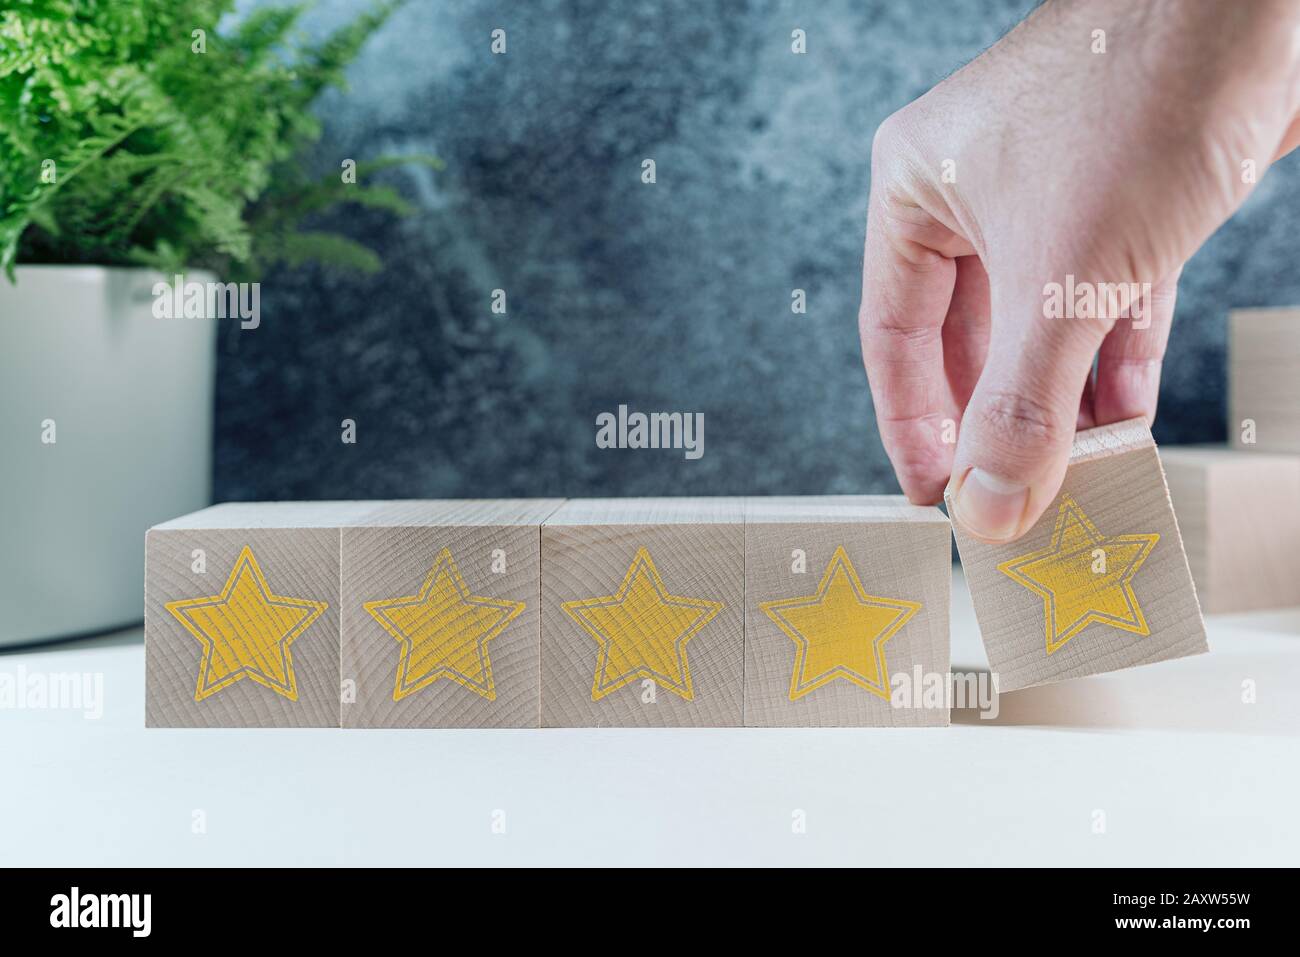 valutazione della qualità a cinque stelle su blocchi di legno, concetto di feedback dei clienti Foto Stock